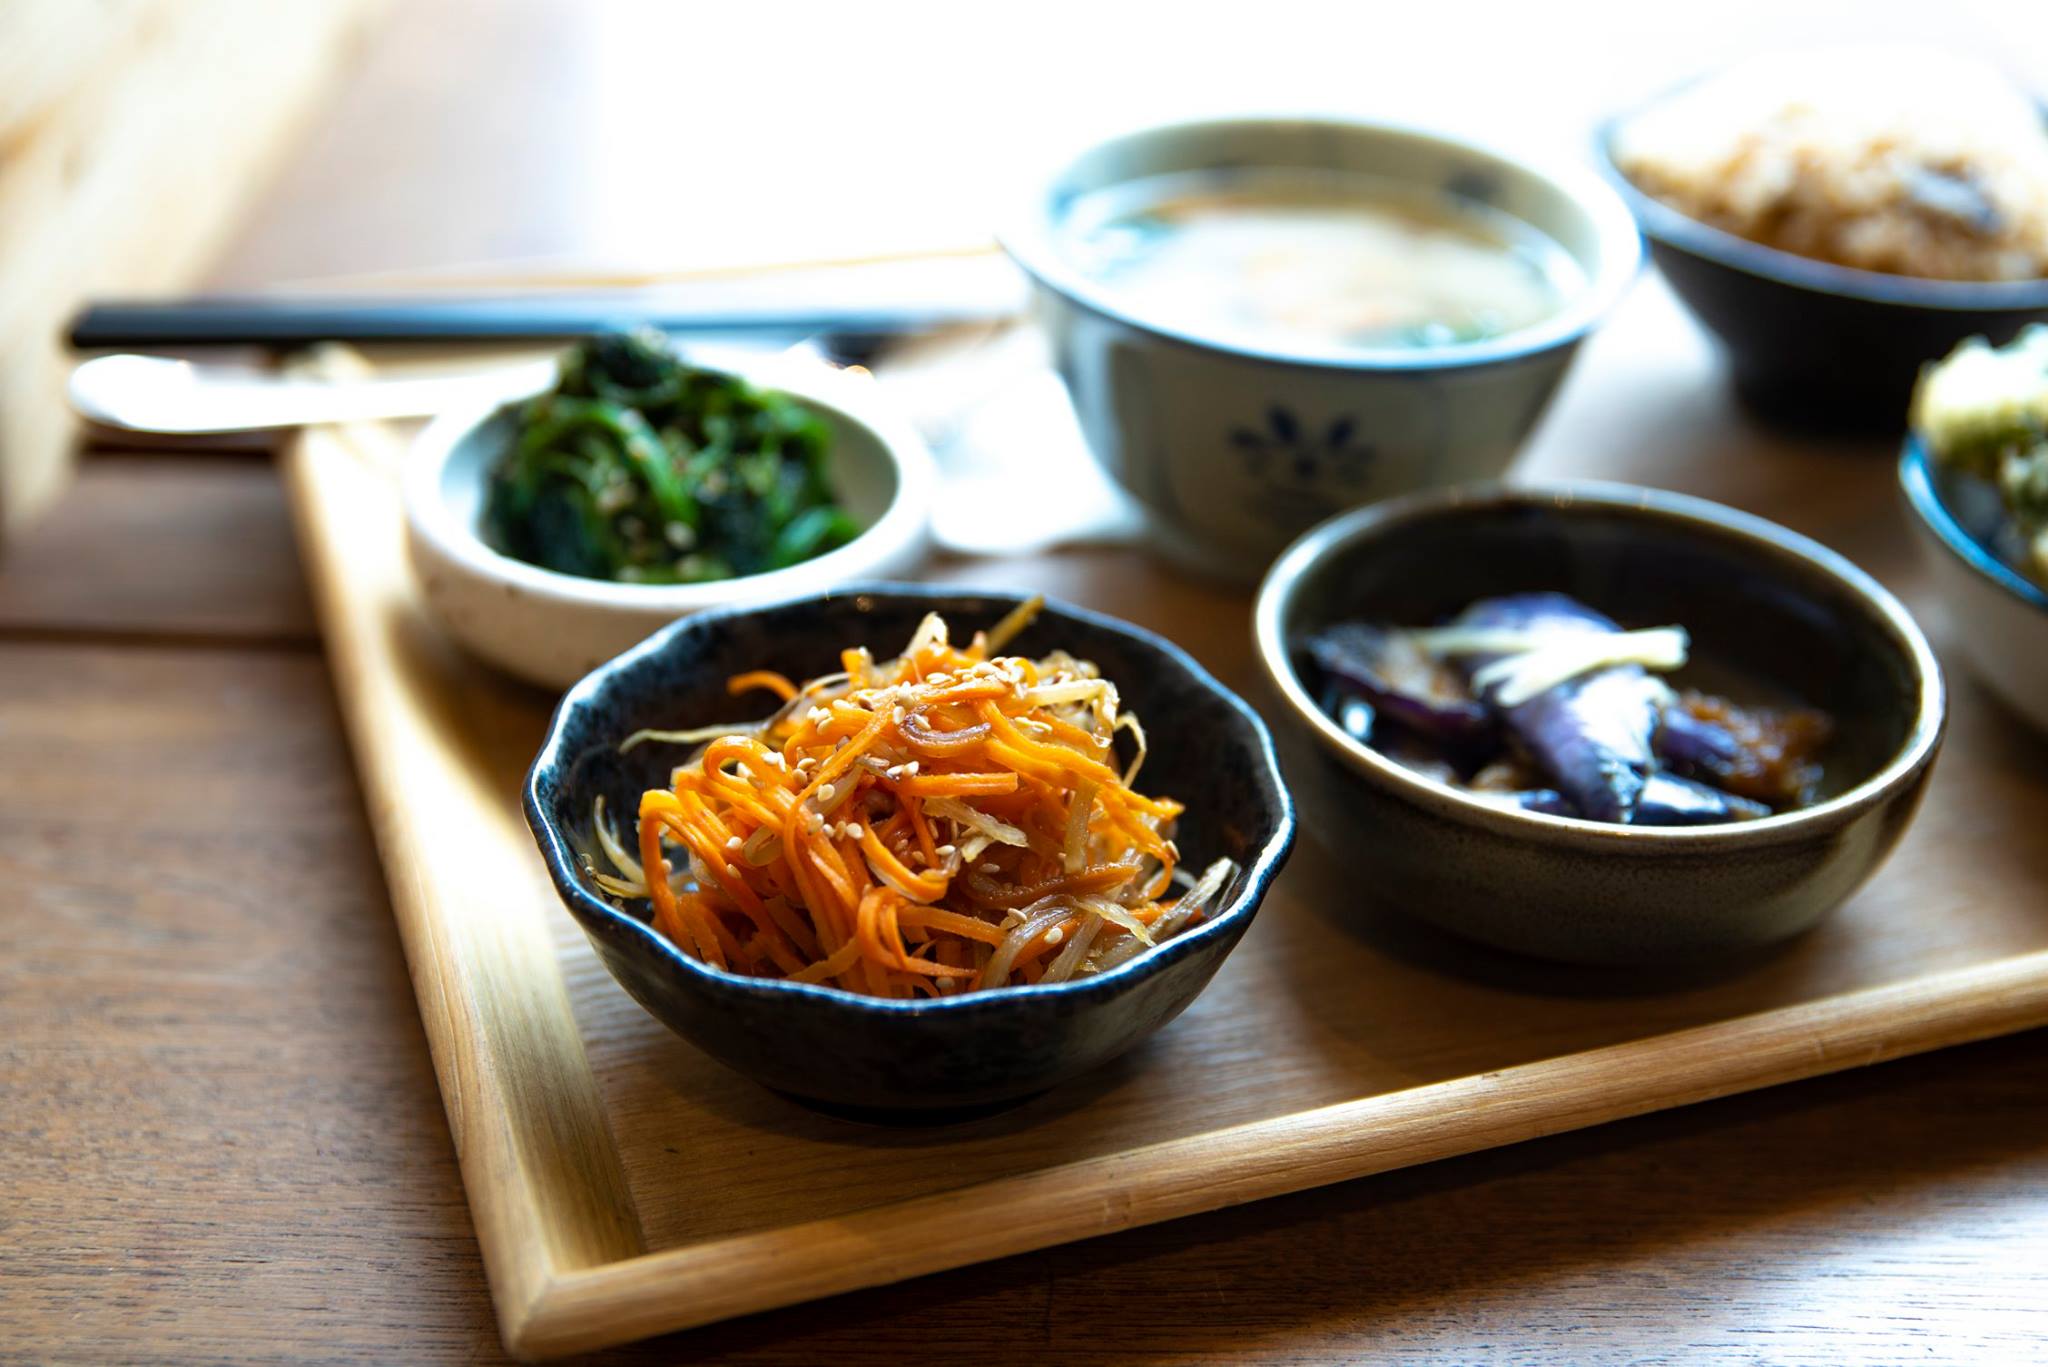 日式素食餐廳擺設精緻且味道清新可口，而且大部分菜式採取家常的食材，會讓人感覺就像是在家中吃飯一般。©Mum Veggie Cafe